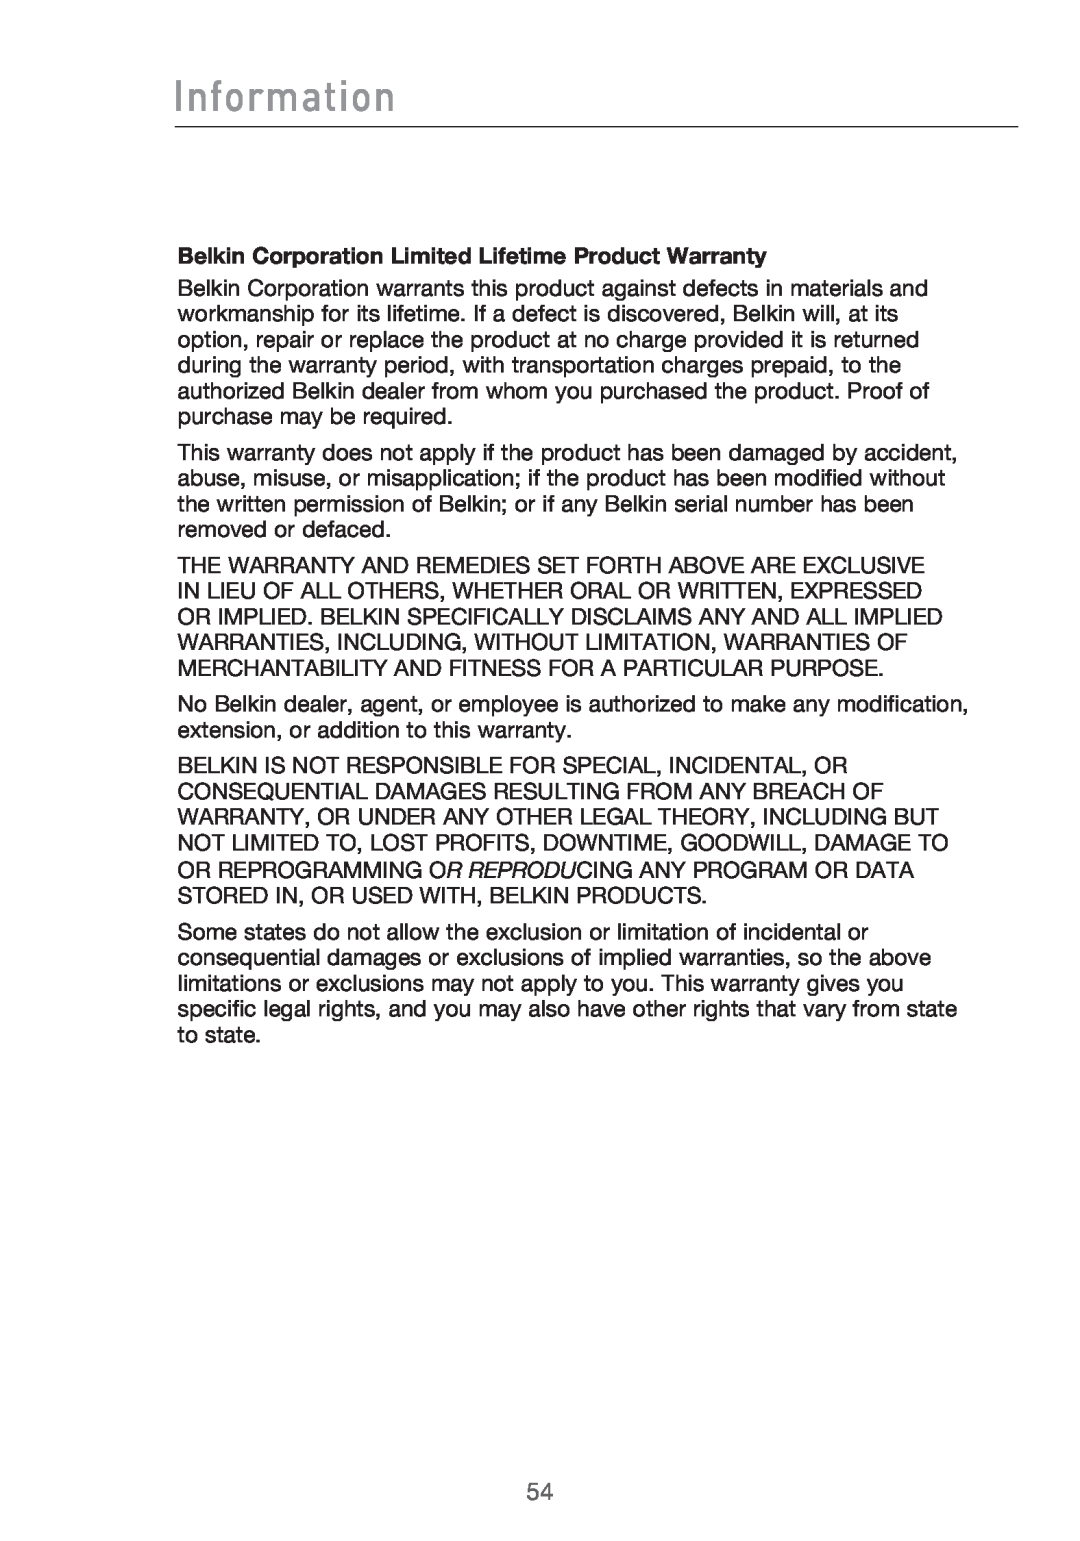 Belkin Range Extender/ Access Point manual Information, Belkin Corporation Limited Lifetime Product Warranty 